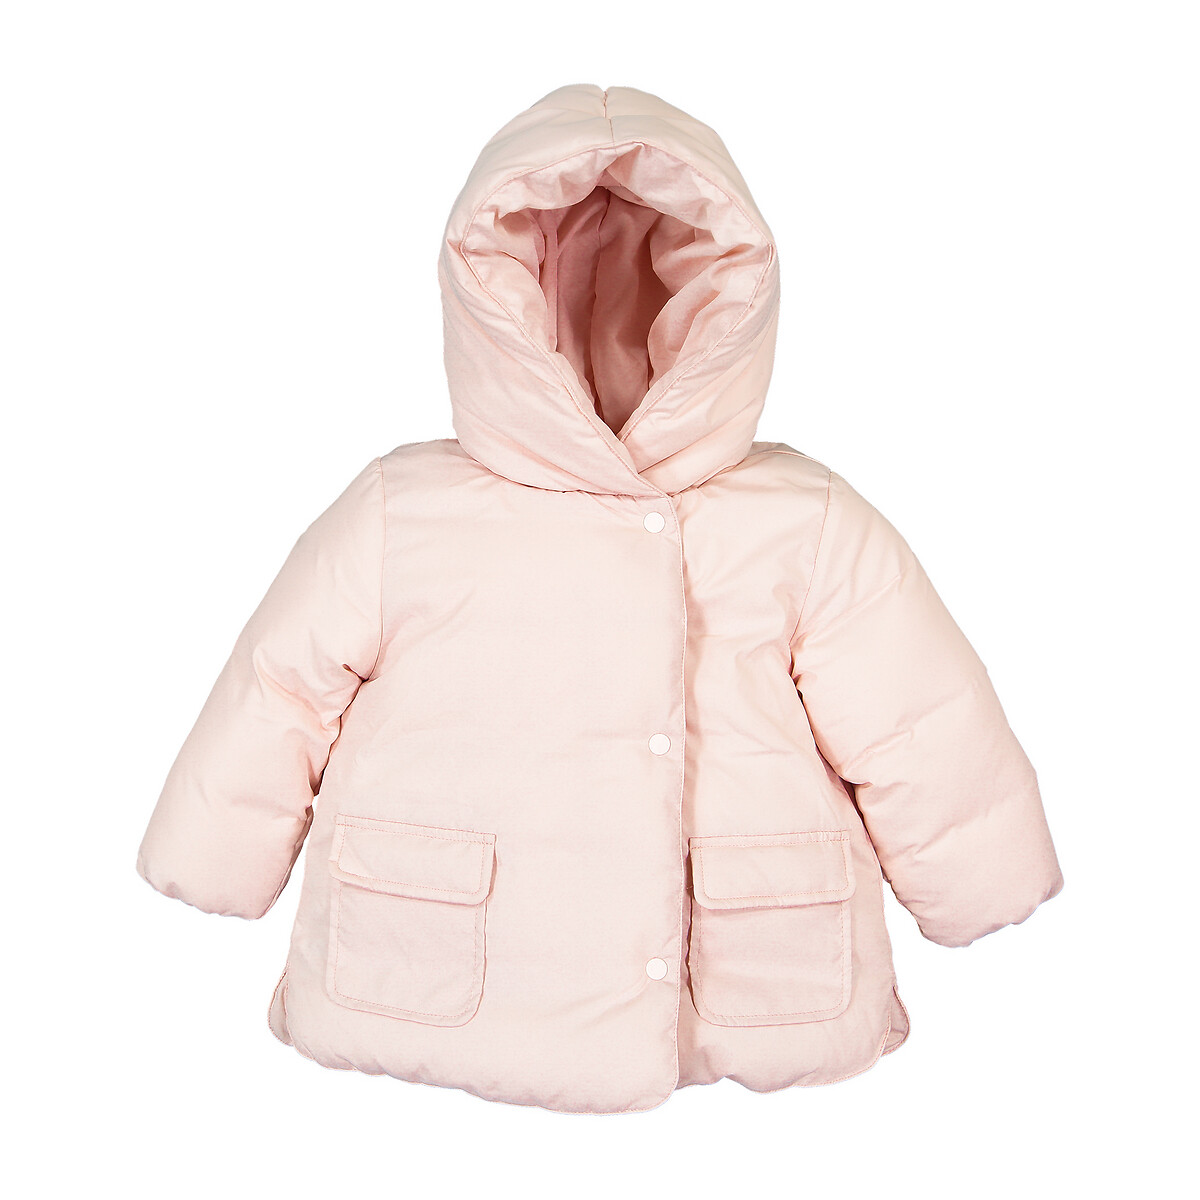 Куртка La Redoute Стеганая утепленная с капюшоном 3 мес-4 года 4 года - 102 см розовый, размер 4 года - 102 см - фото 1